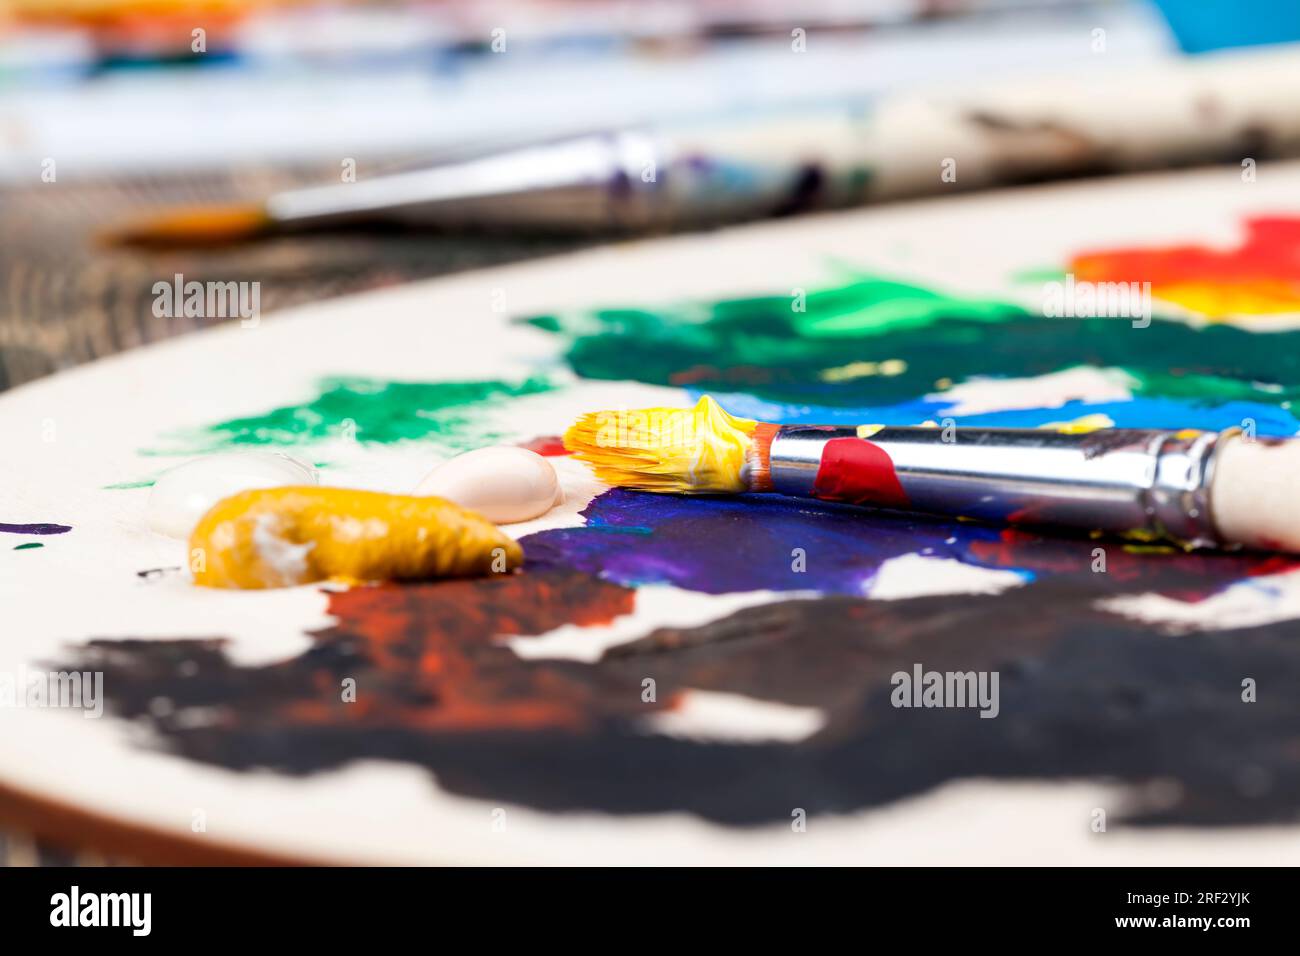 le processus créatif de dessin en mélangeant différentes couleurs de peintures avec des pinceaux d'art, des pinceaux d'art et des peintures pour peindre des images, de l'huile et d'autres pai Banque D'Images